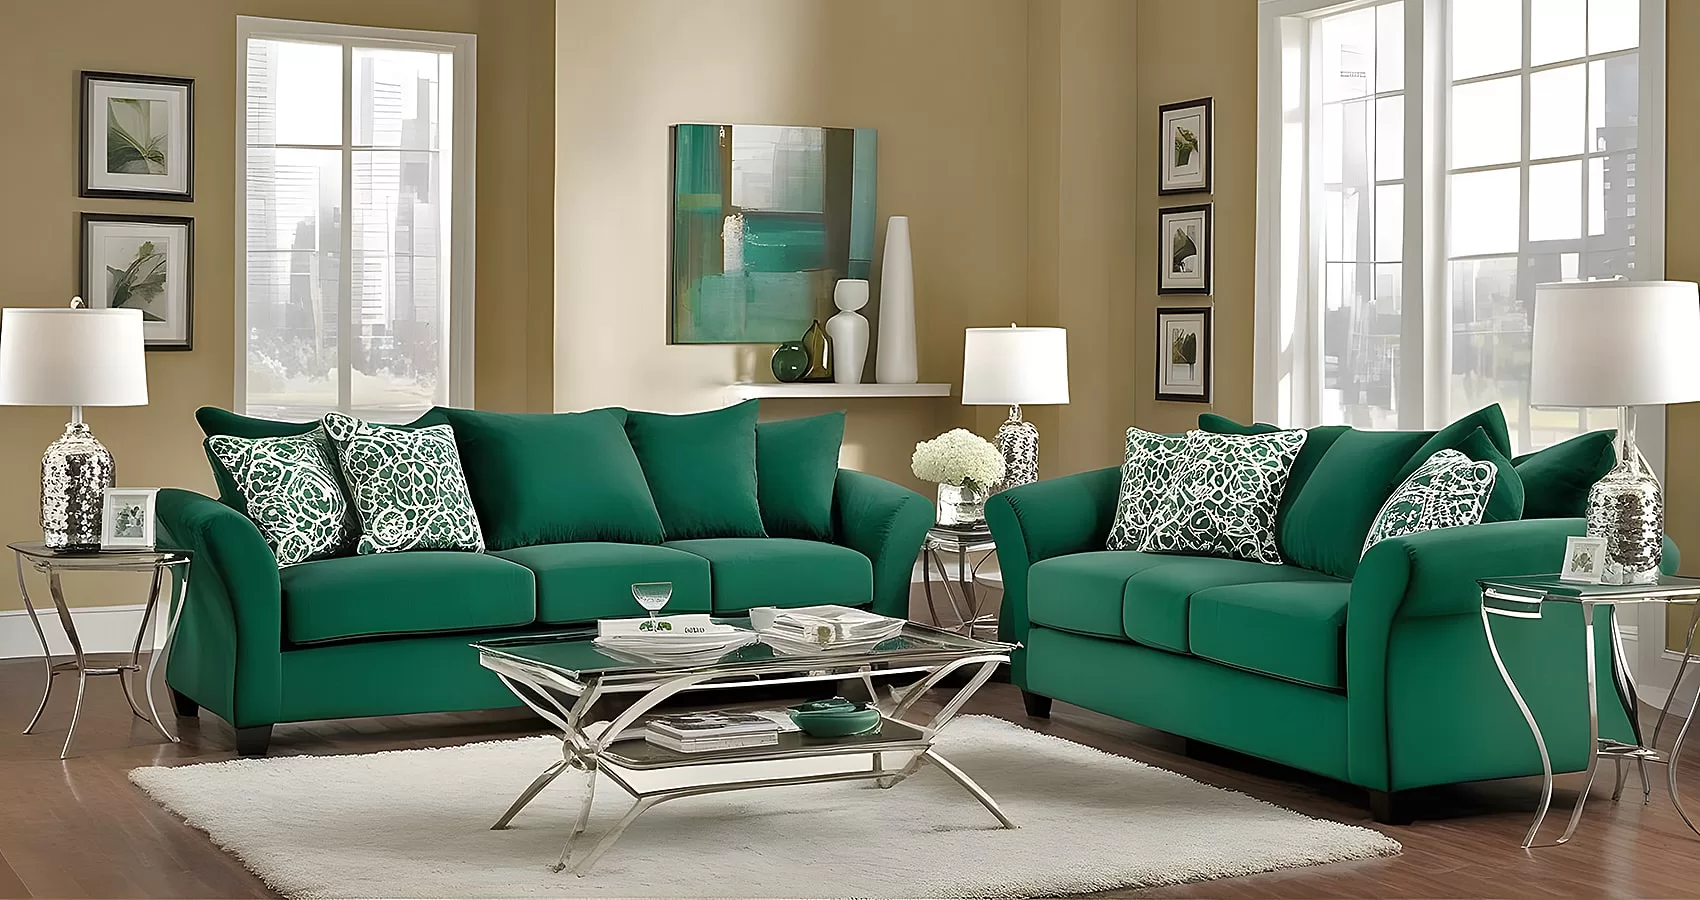 Emerald Green Sofa Living Room Ideas | Emerald Green Couch Living Room Ideas